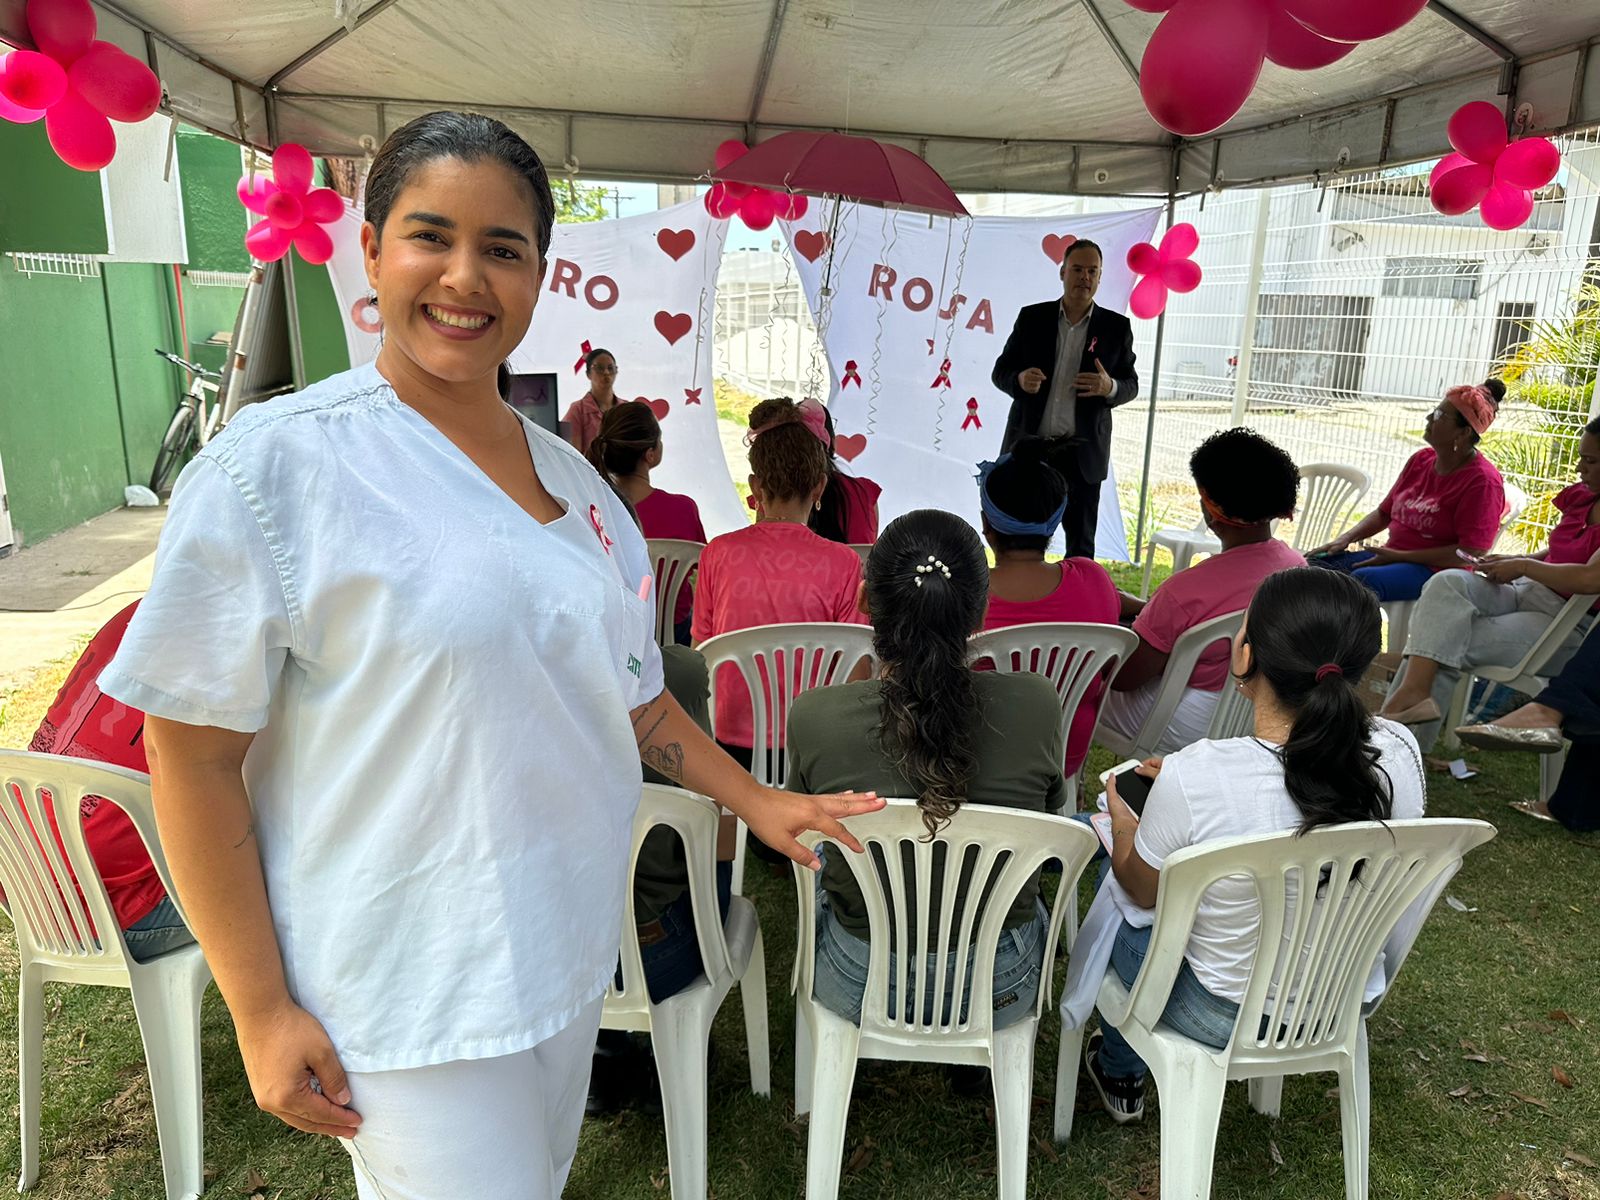 UPA Estadual de Feira de Santana promove ação de saúde em alusão ao Outubro Rosa